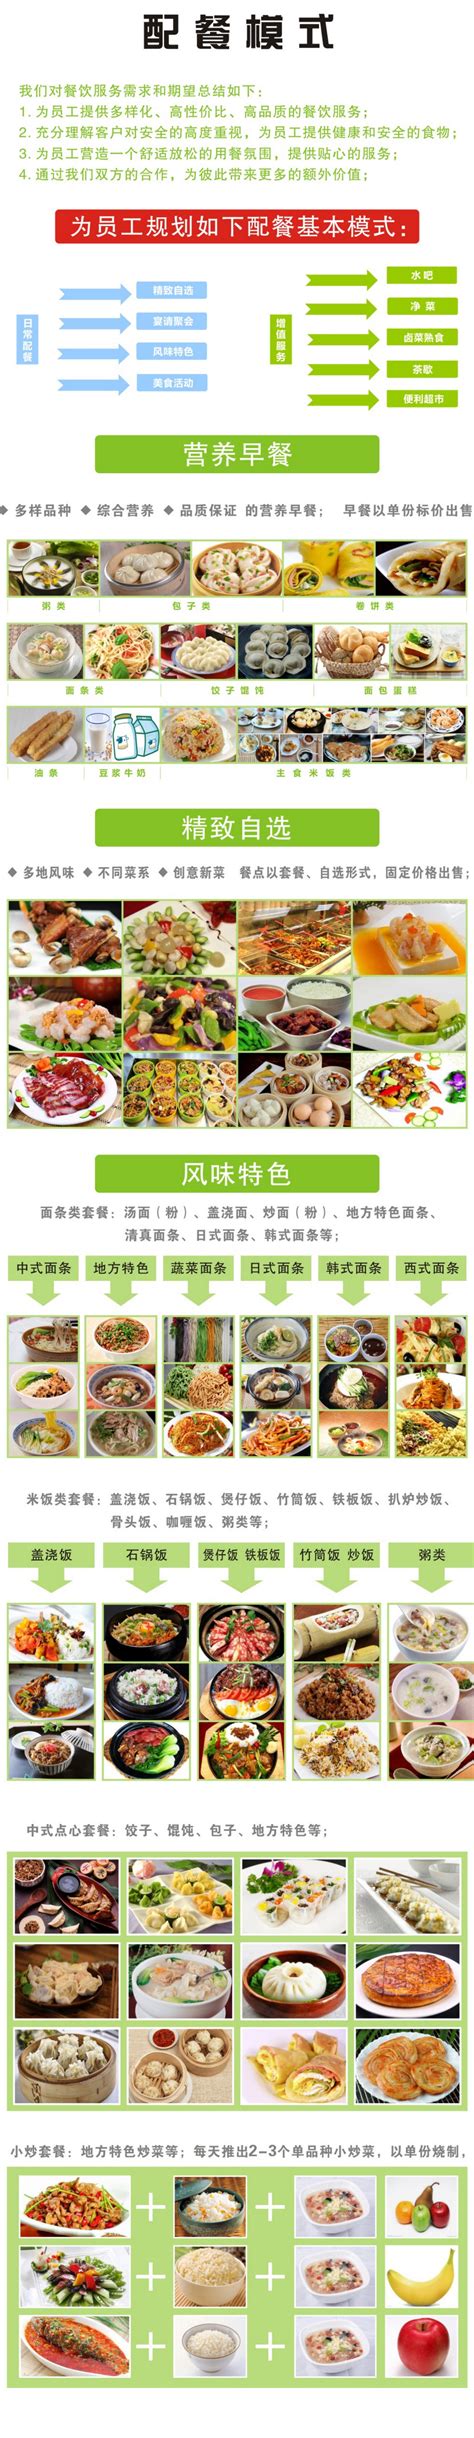 杭州餐饮招标网站